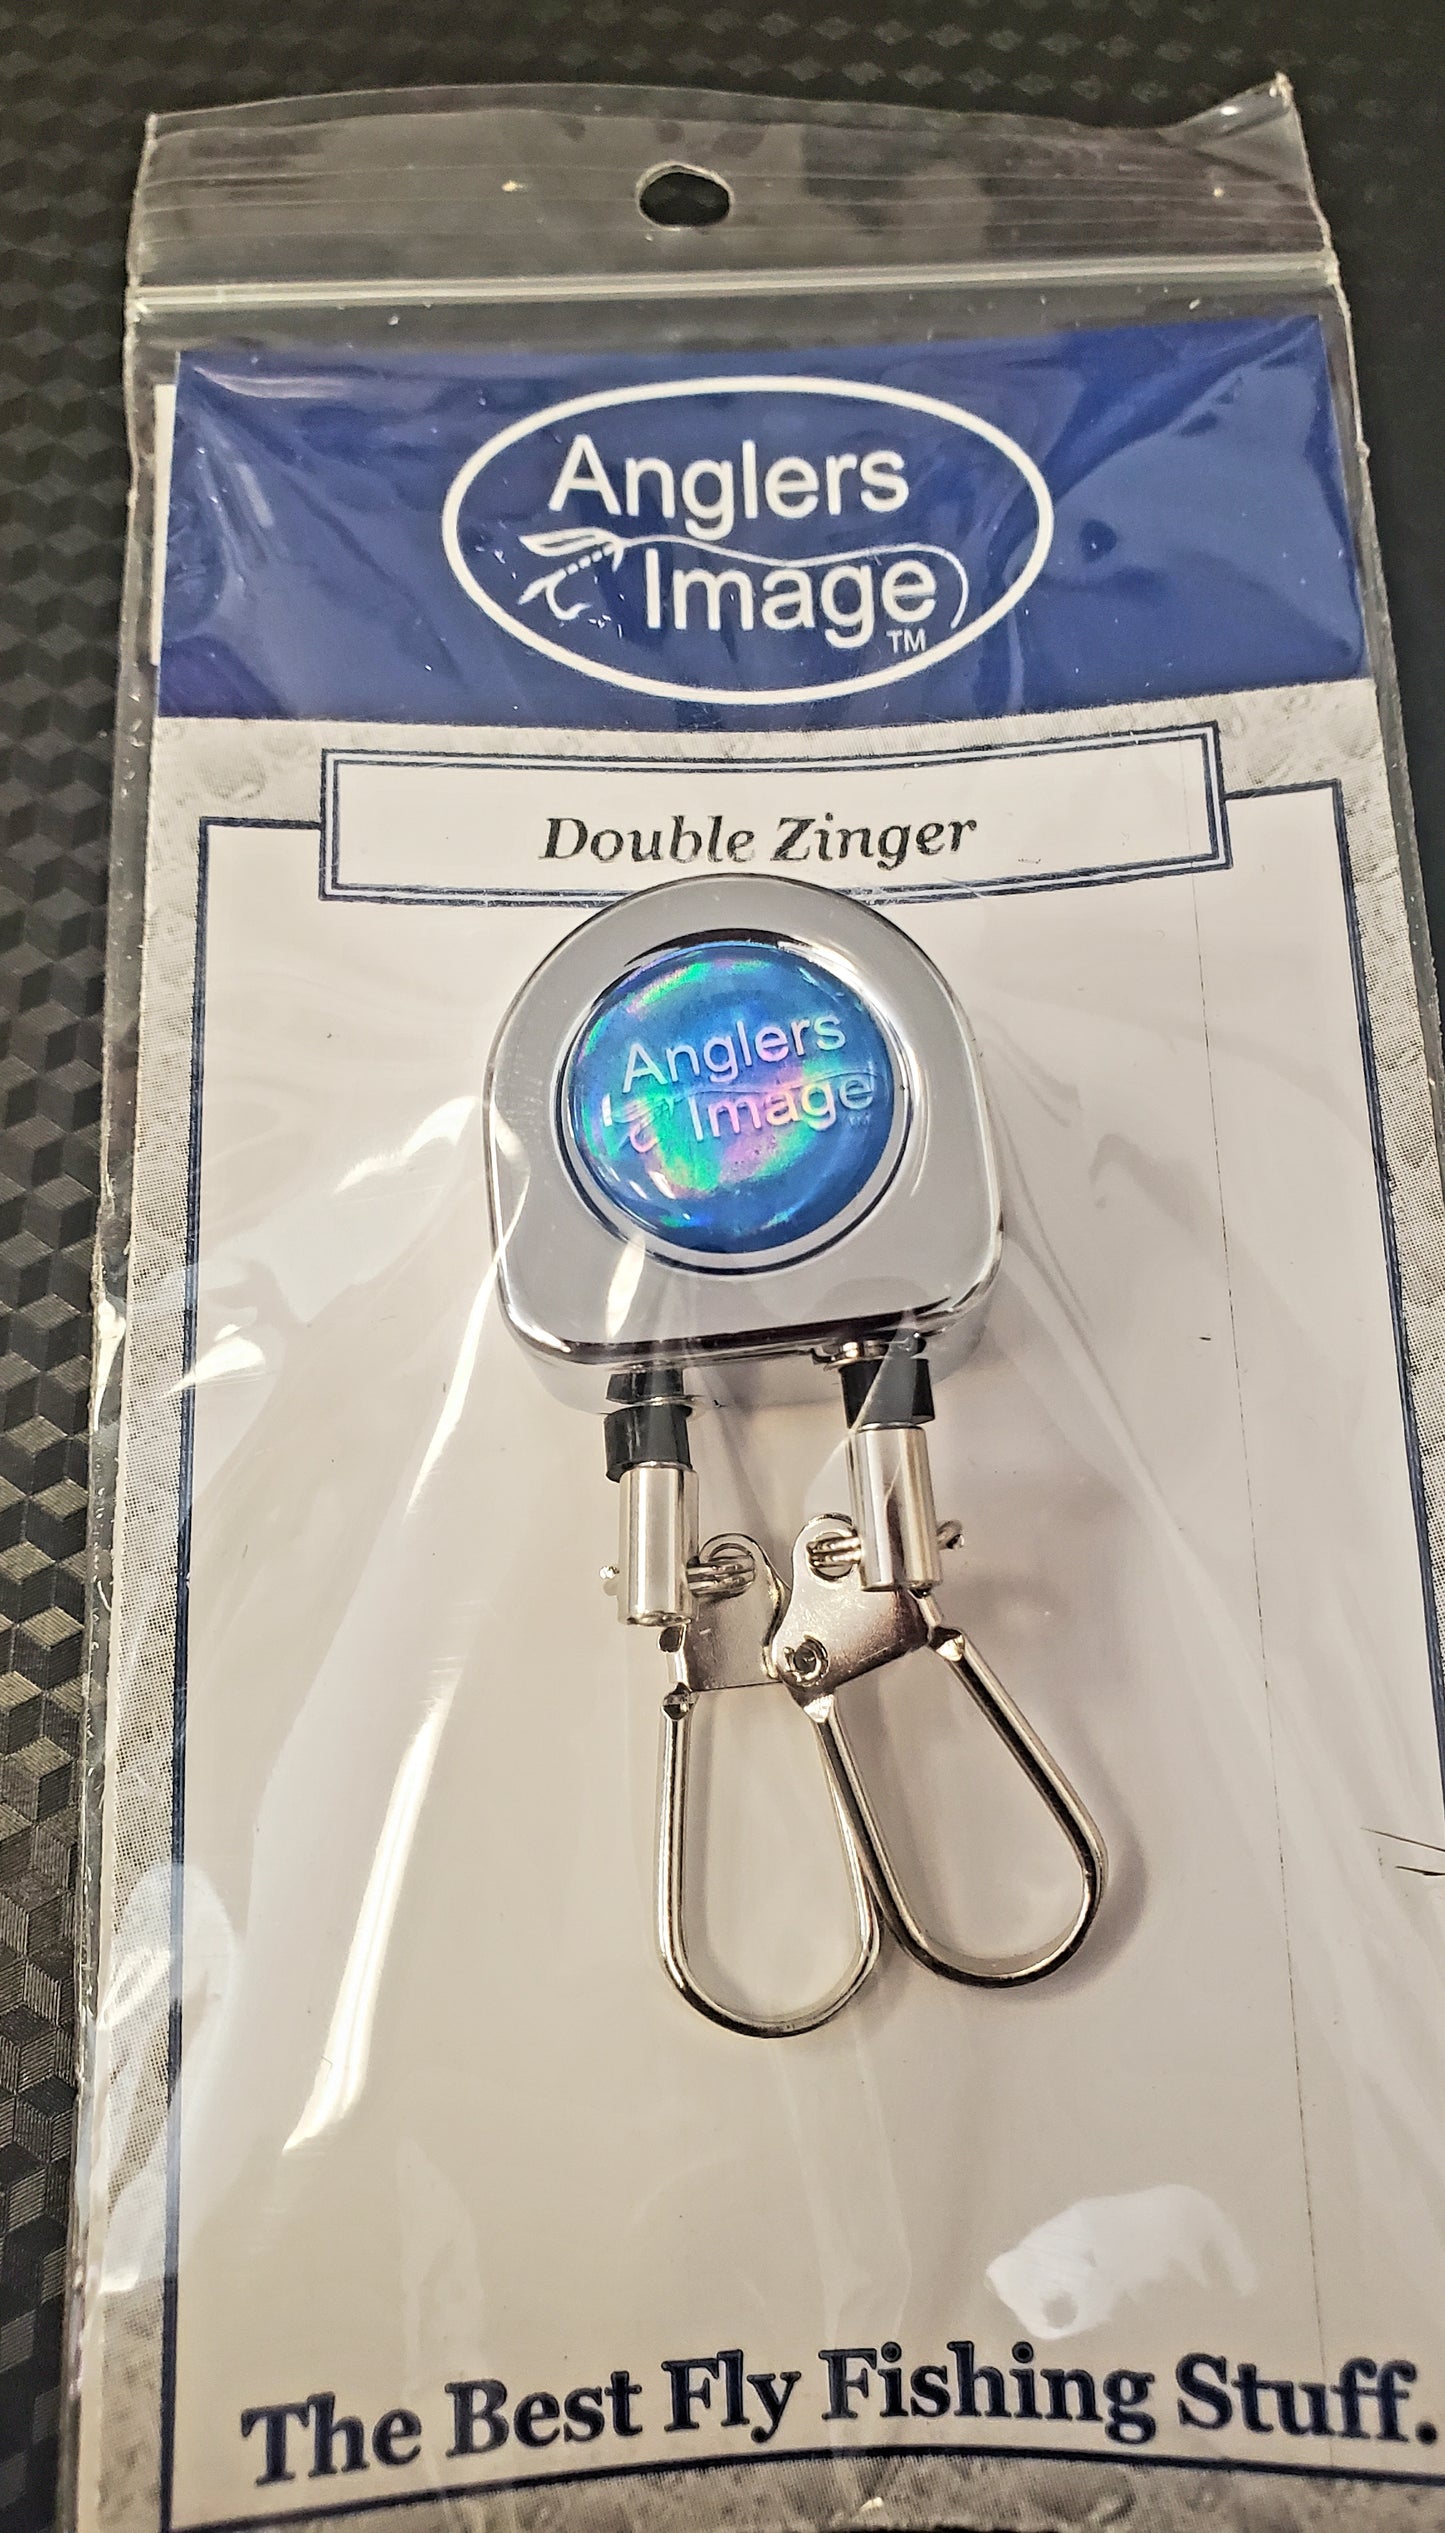 Anglers image double zinger